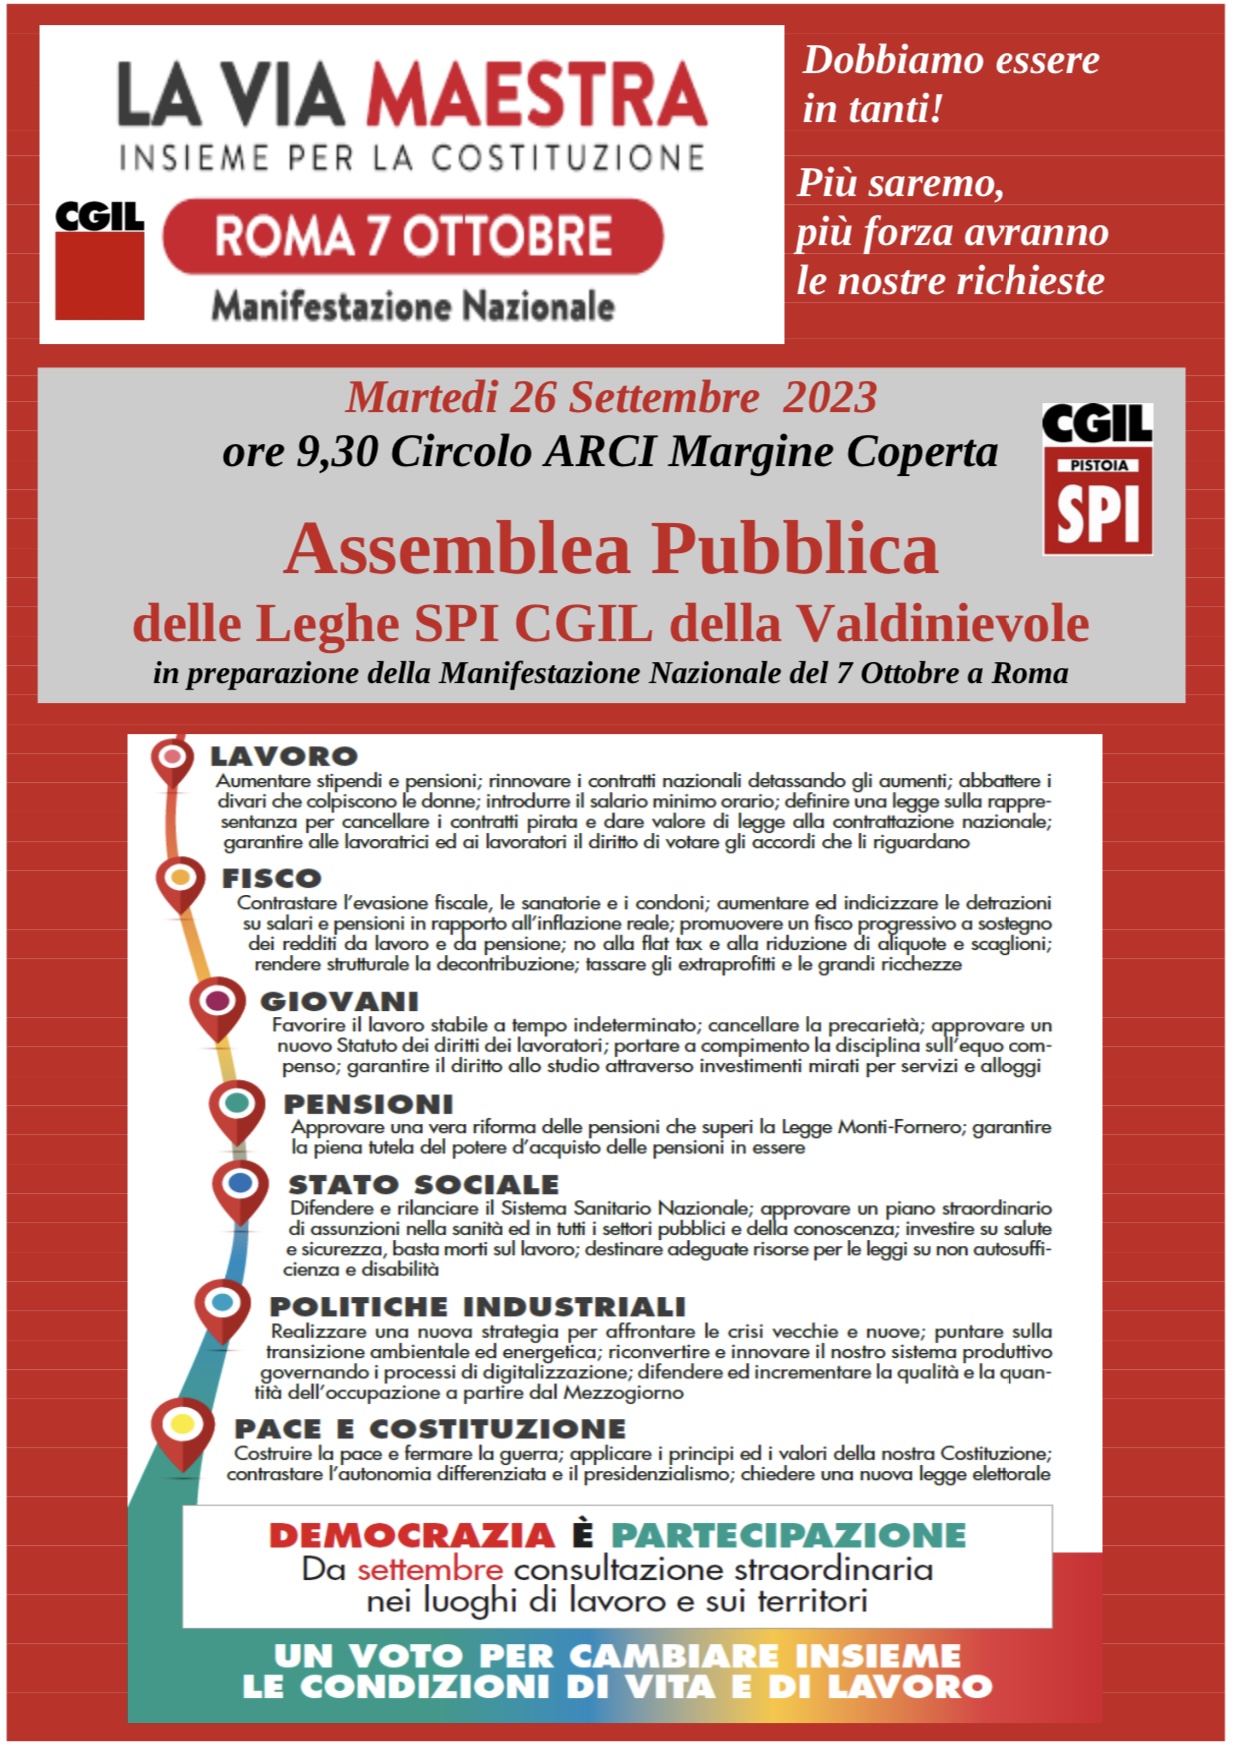 assemblea_pubbllica_Leghe_SPI_Valdinievole_26_settembre_2023.jpg